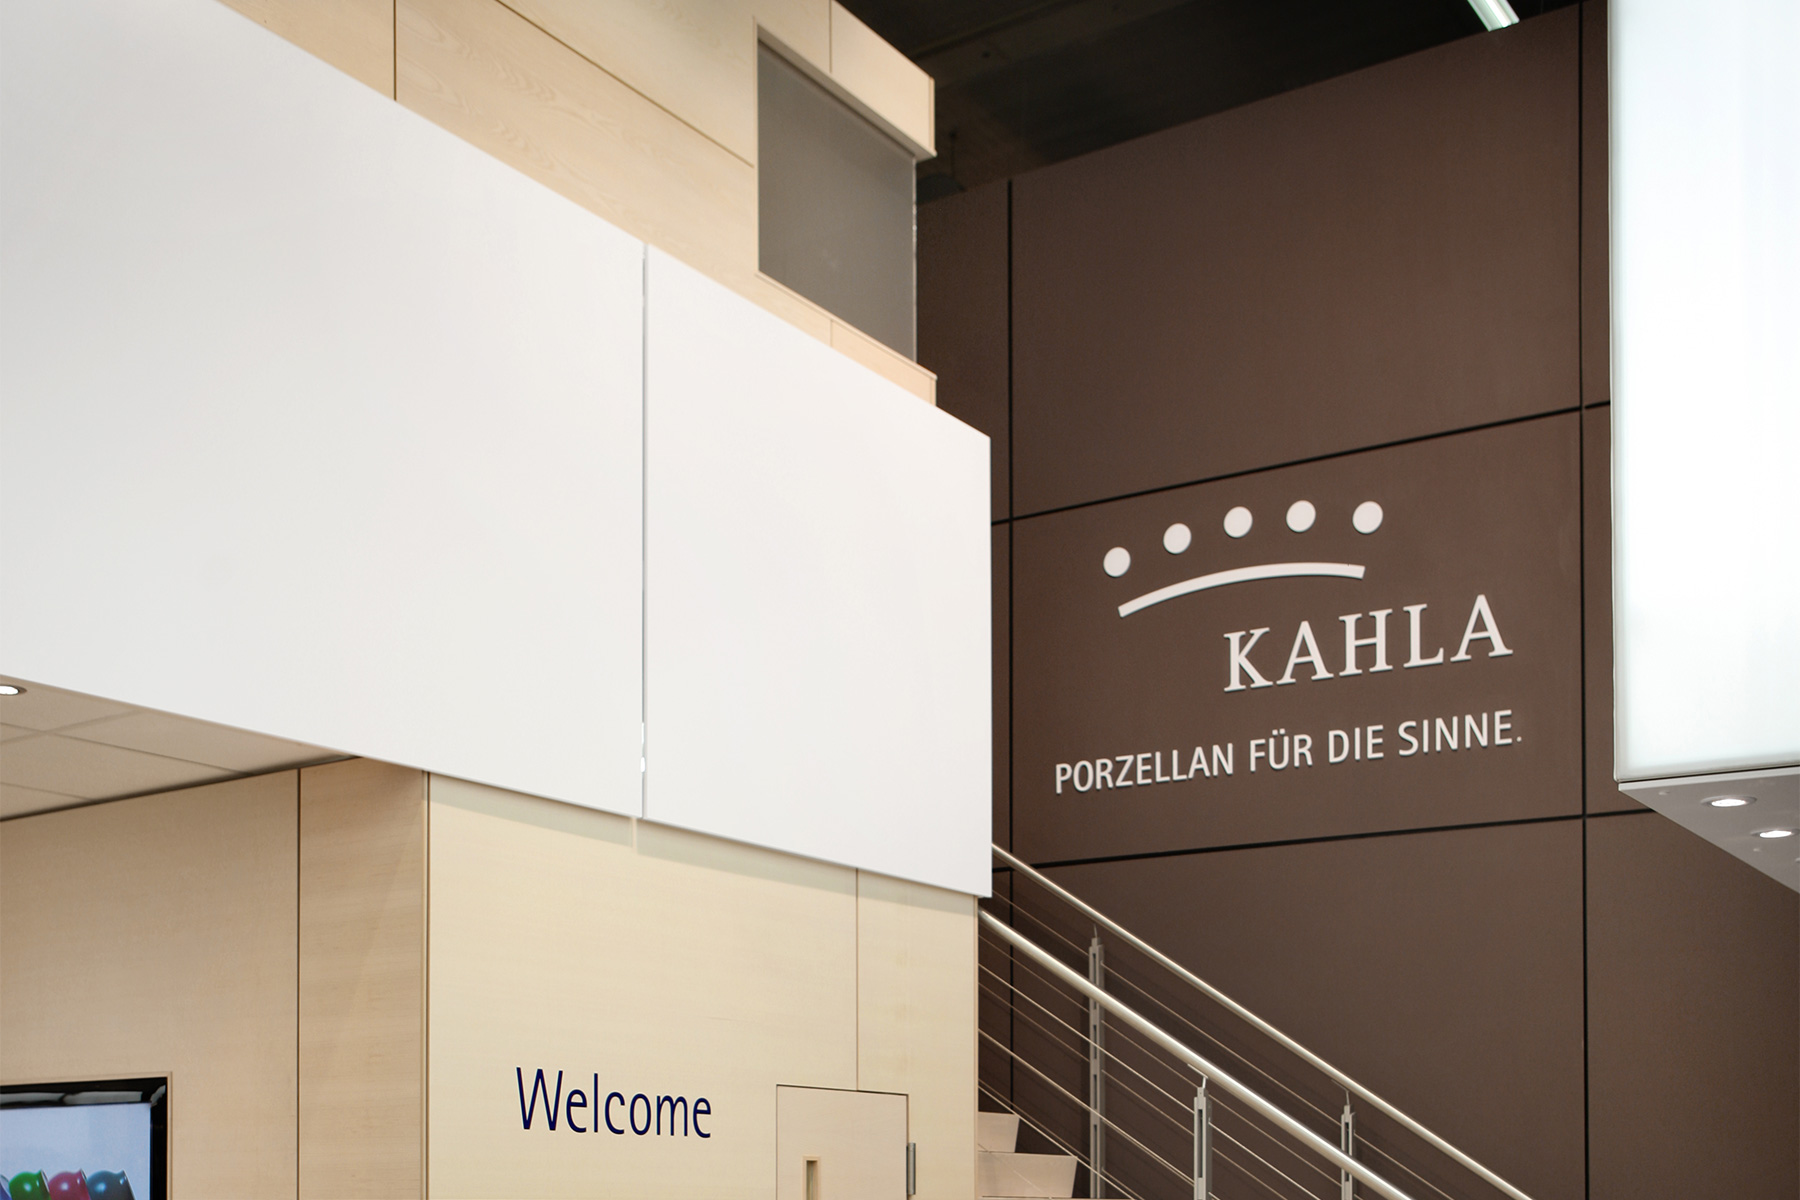 Kahla Porzellan / Exhibition Design